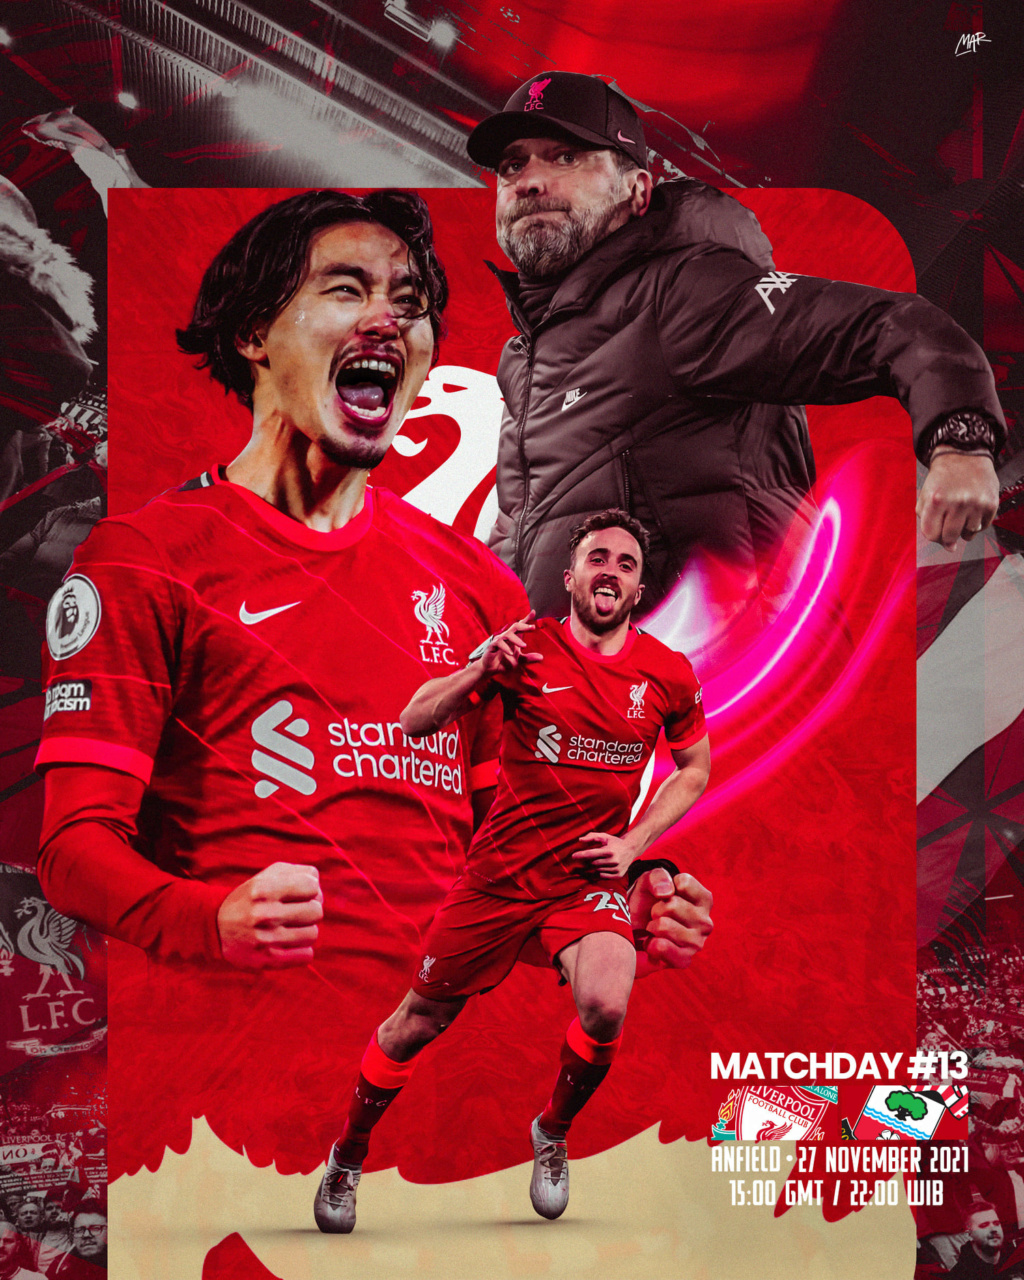 Matchday der Reds 2021/22 - Seite 2 89210